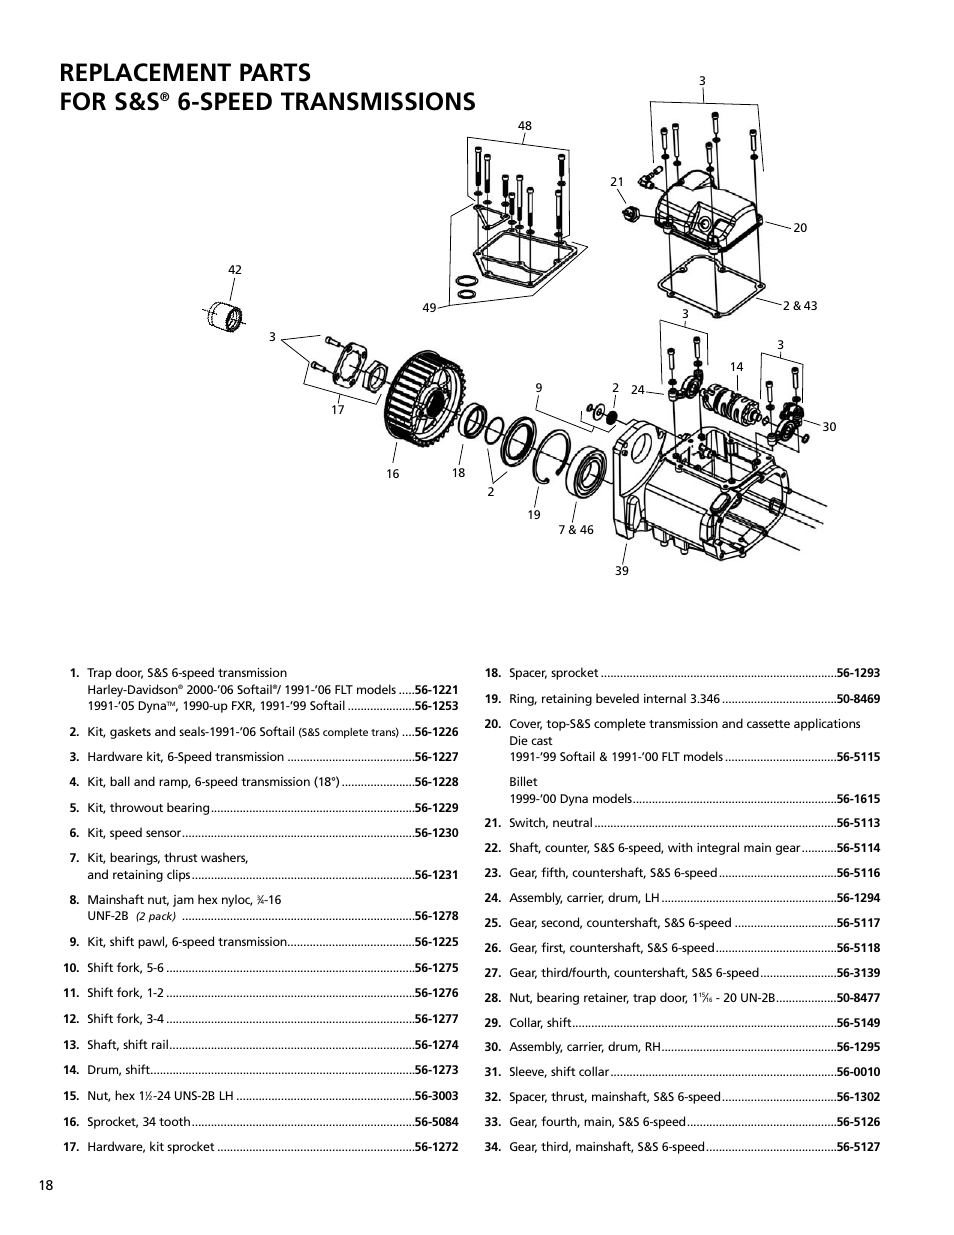 Harley Davidson 4 Speed Transmission Diagram - General Wiring Diagram